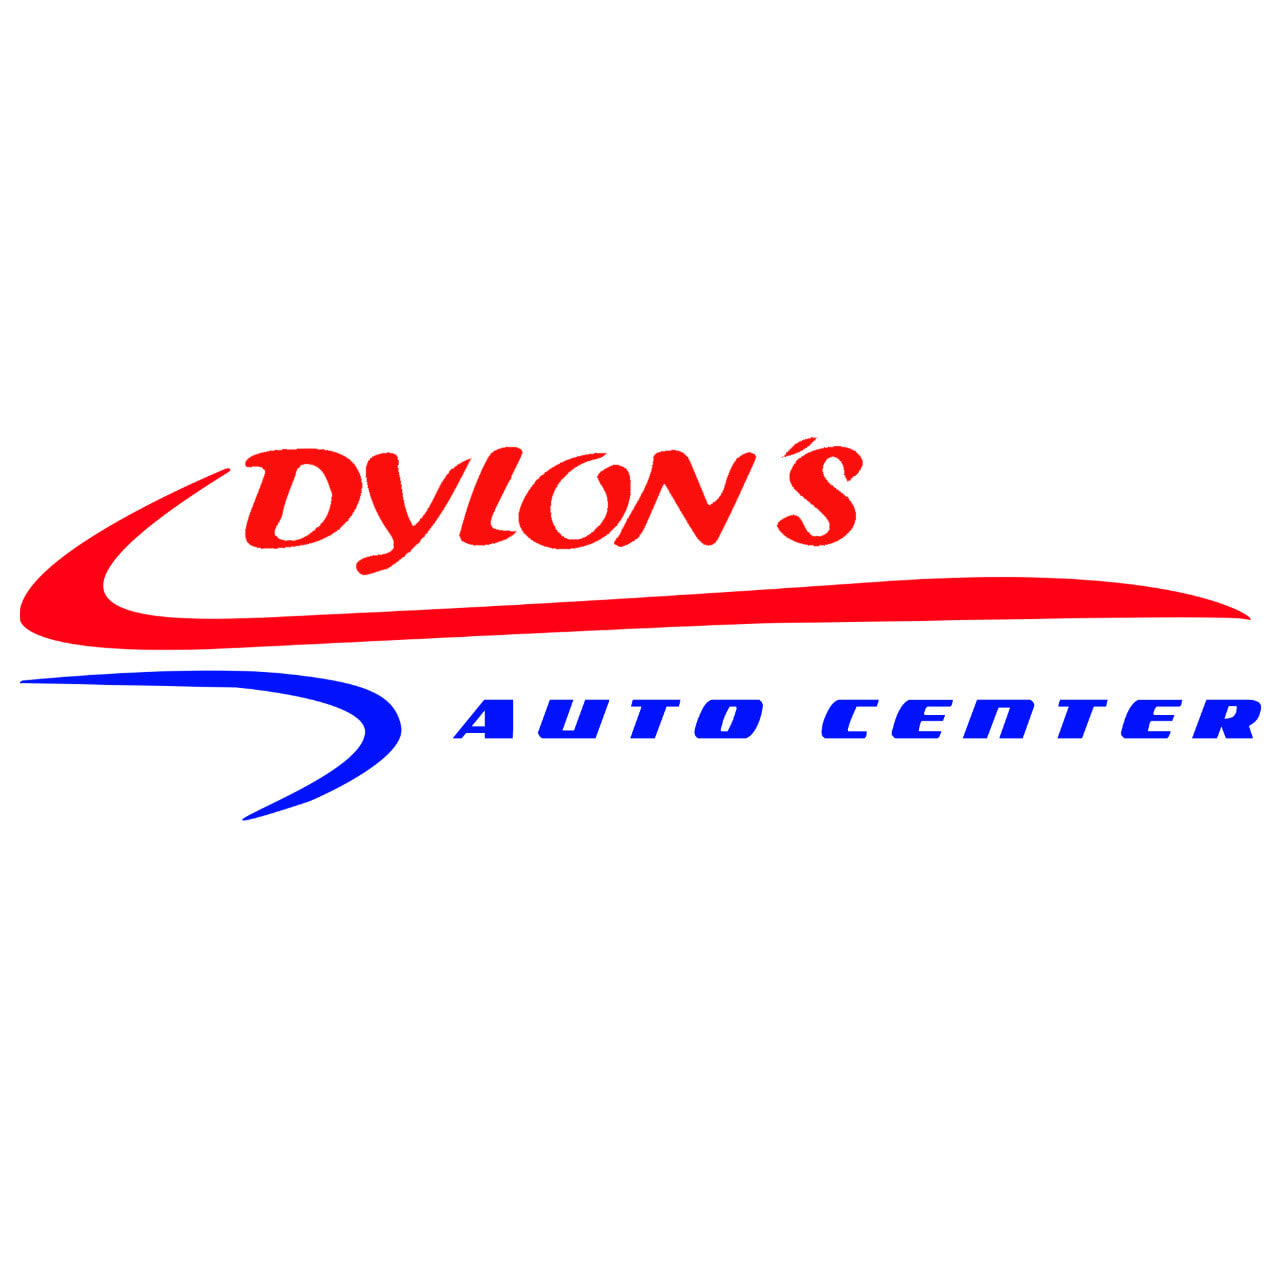 Dylons Auto Center